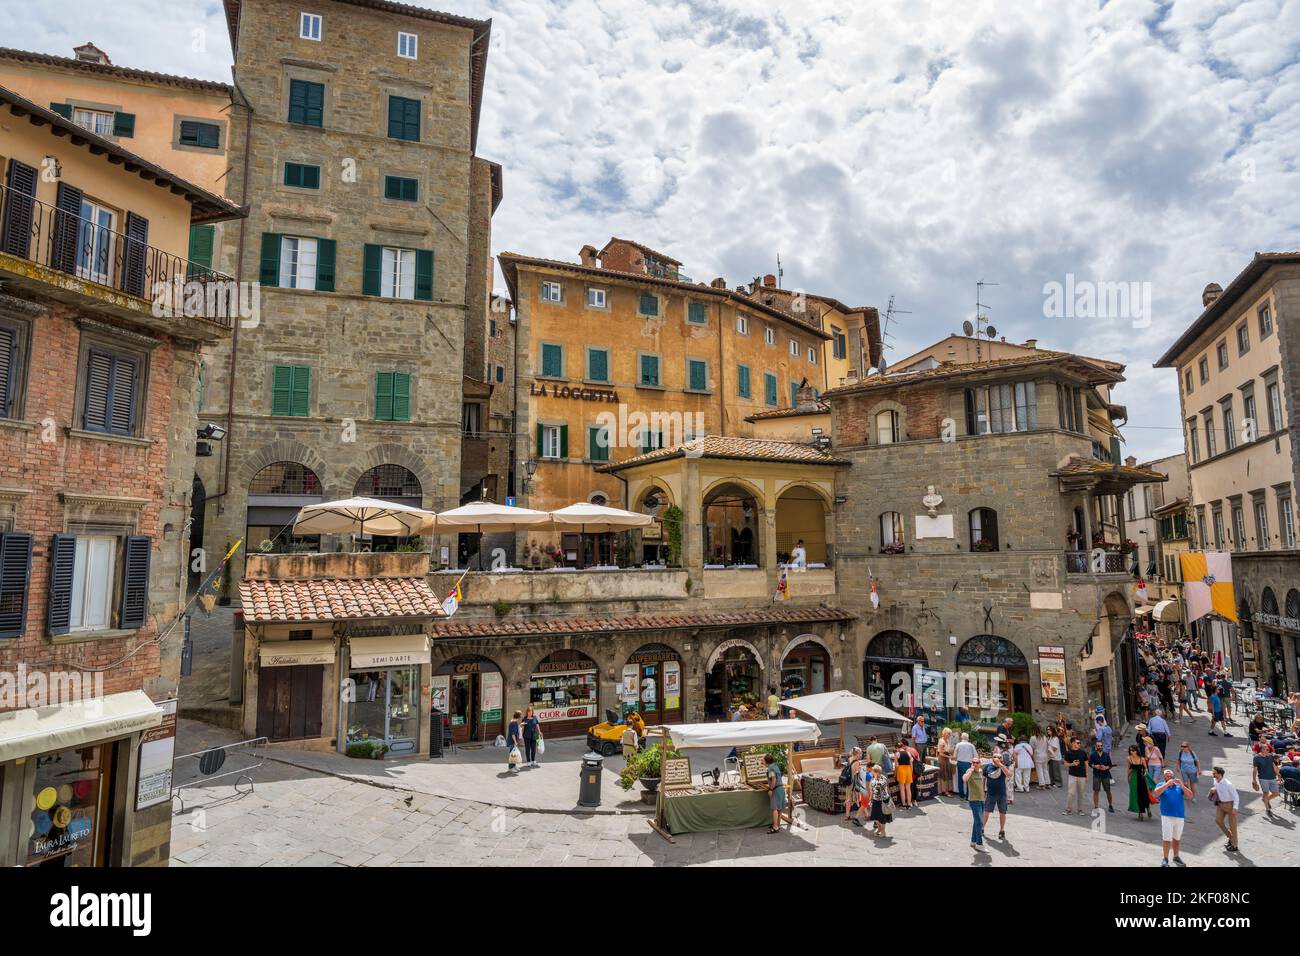 Market stalls in Piazza della Repubblica in hilltop town of Cortona in Tuscany, Italy Stock Photo